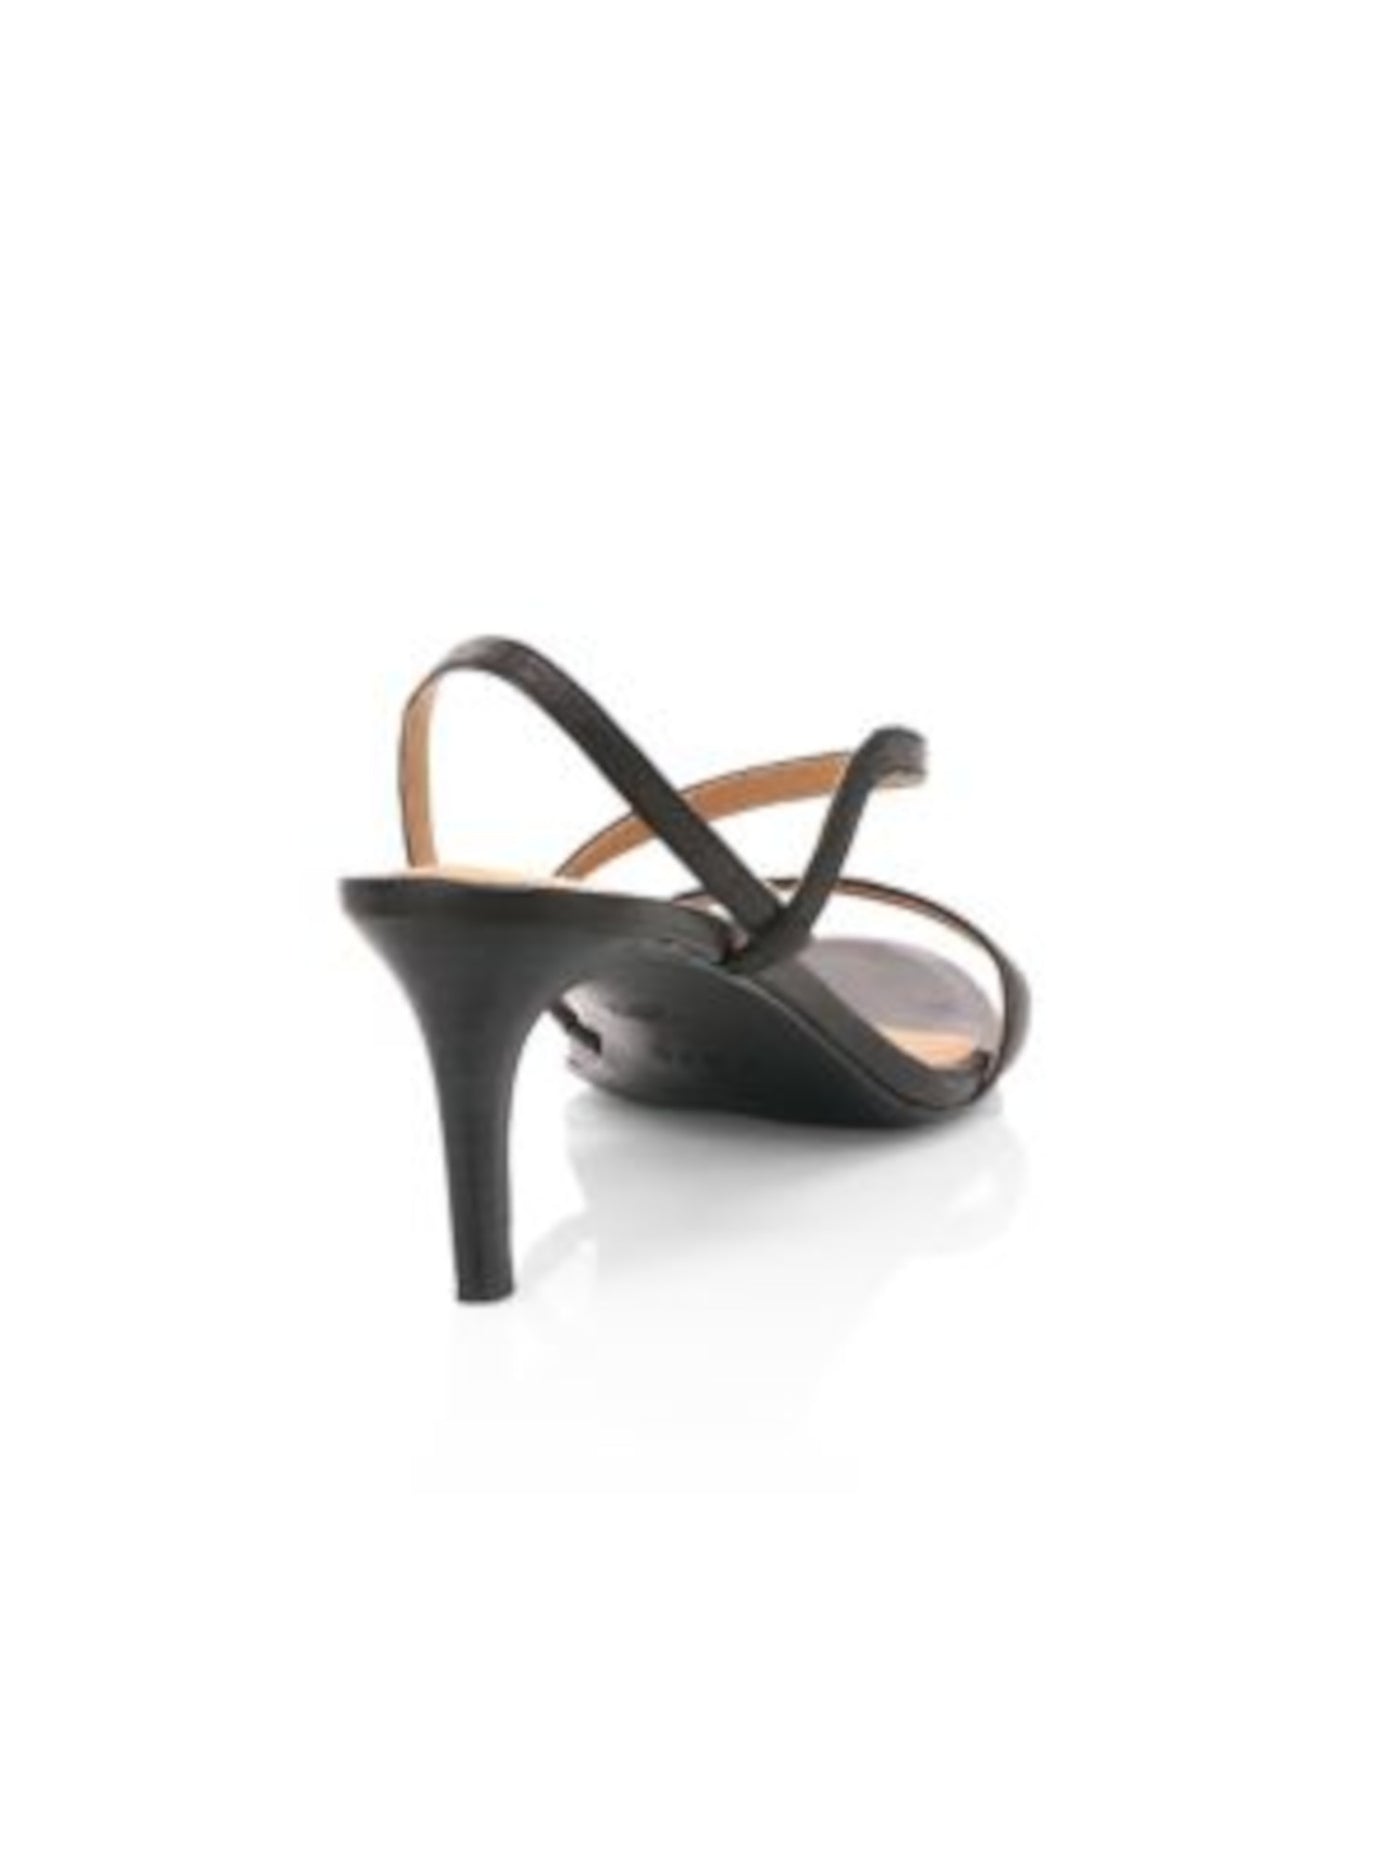 JOIE Womens Black Asymmetrical Padded Madi Round Toe Kitten Heel Slip On Leather Slingback Sandal 37